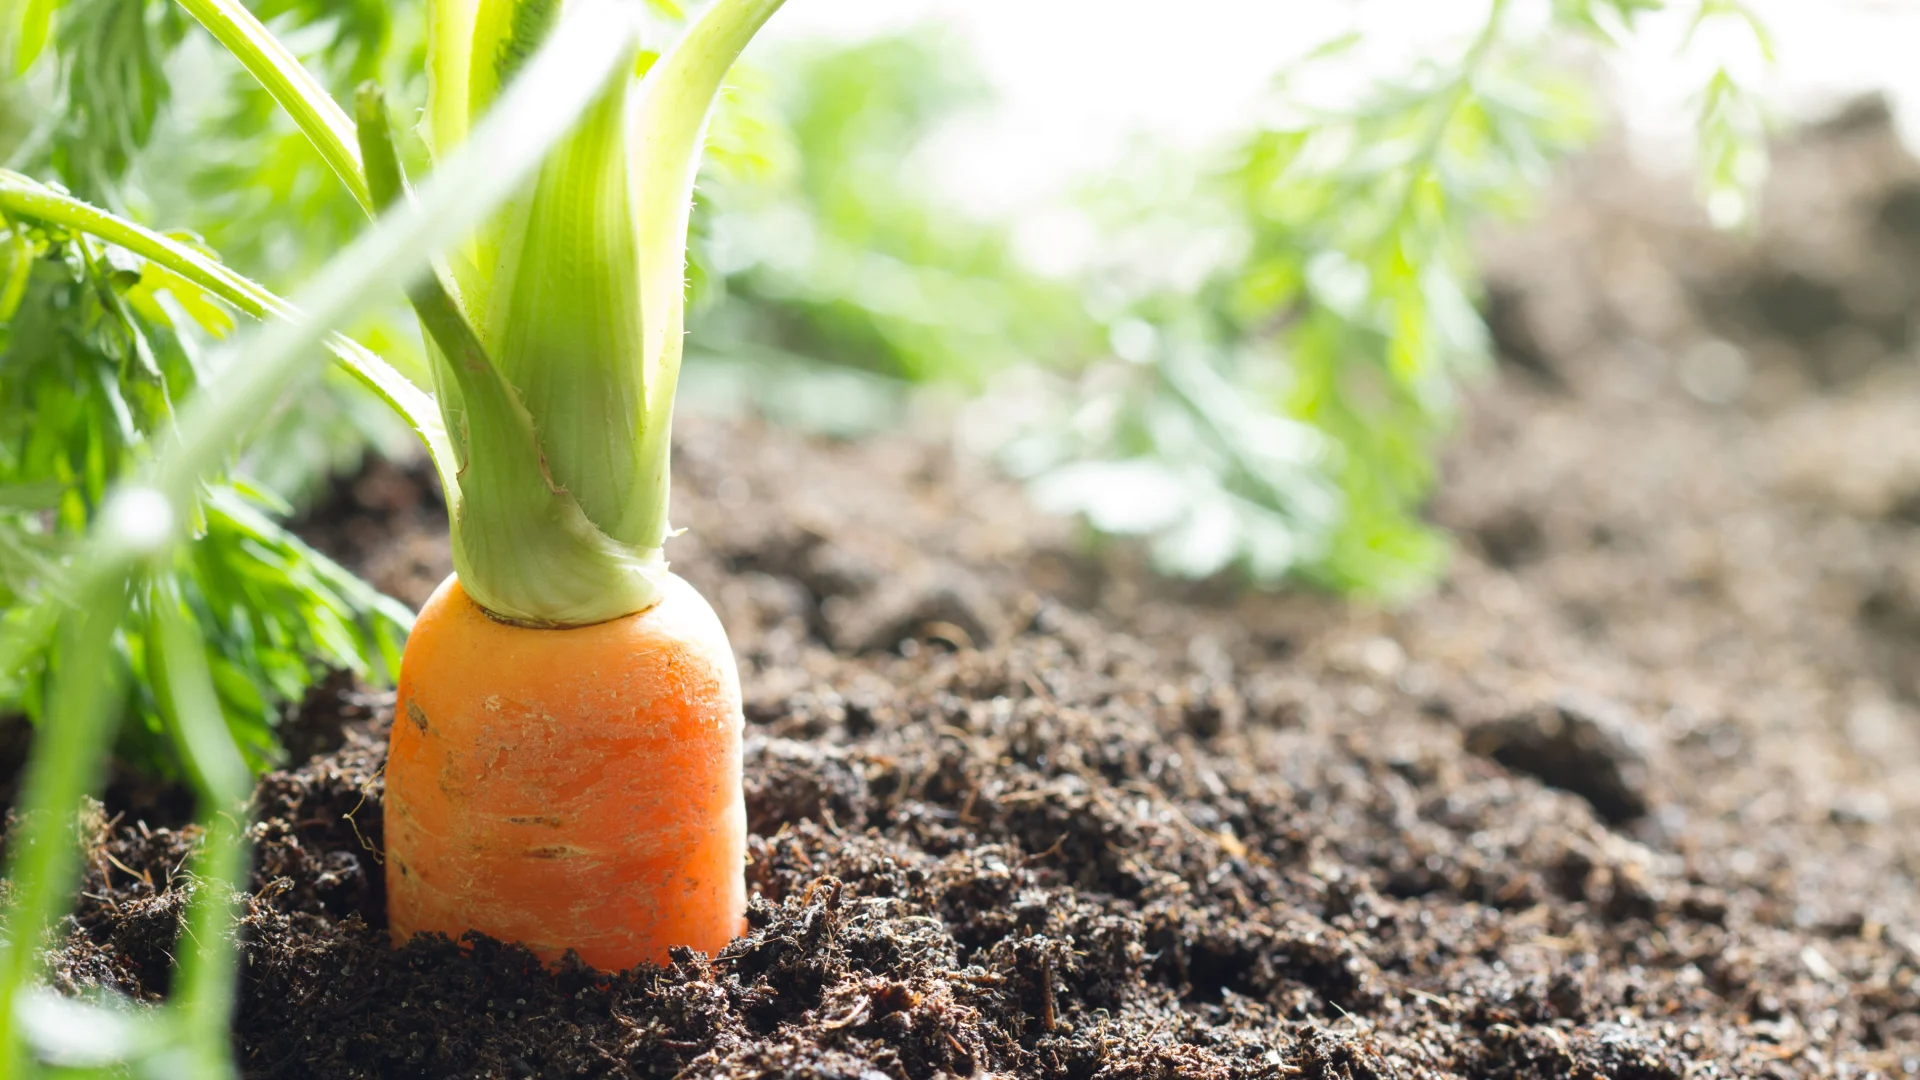 Des carottes bio dans un champ, peu avant la récolte.